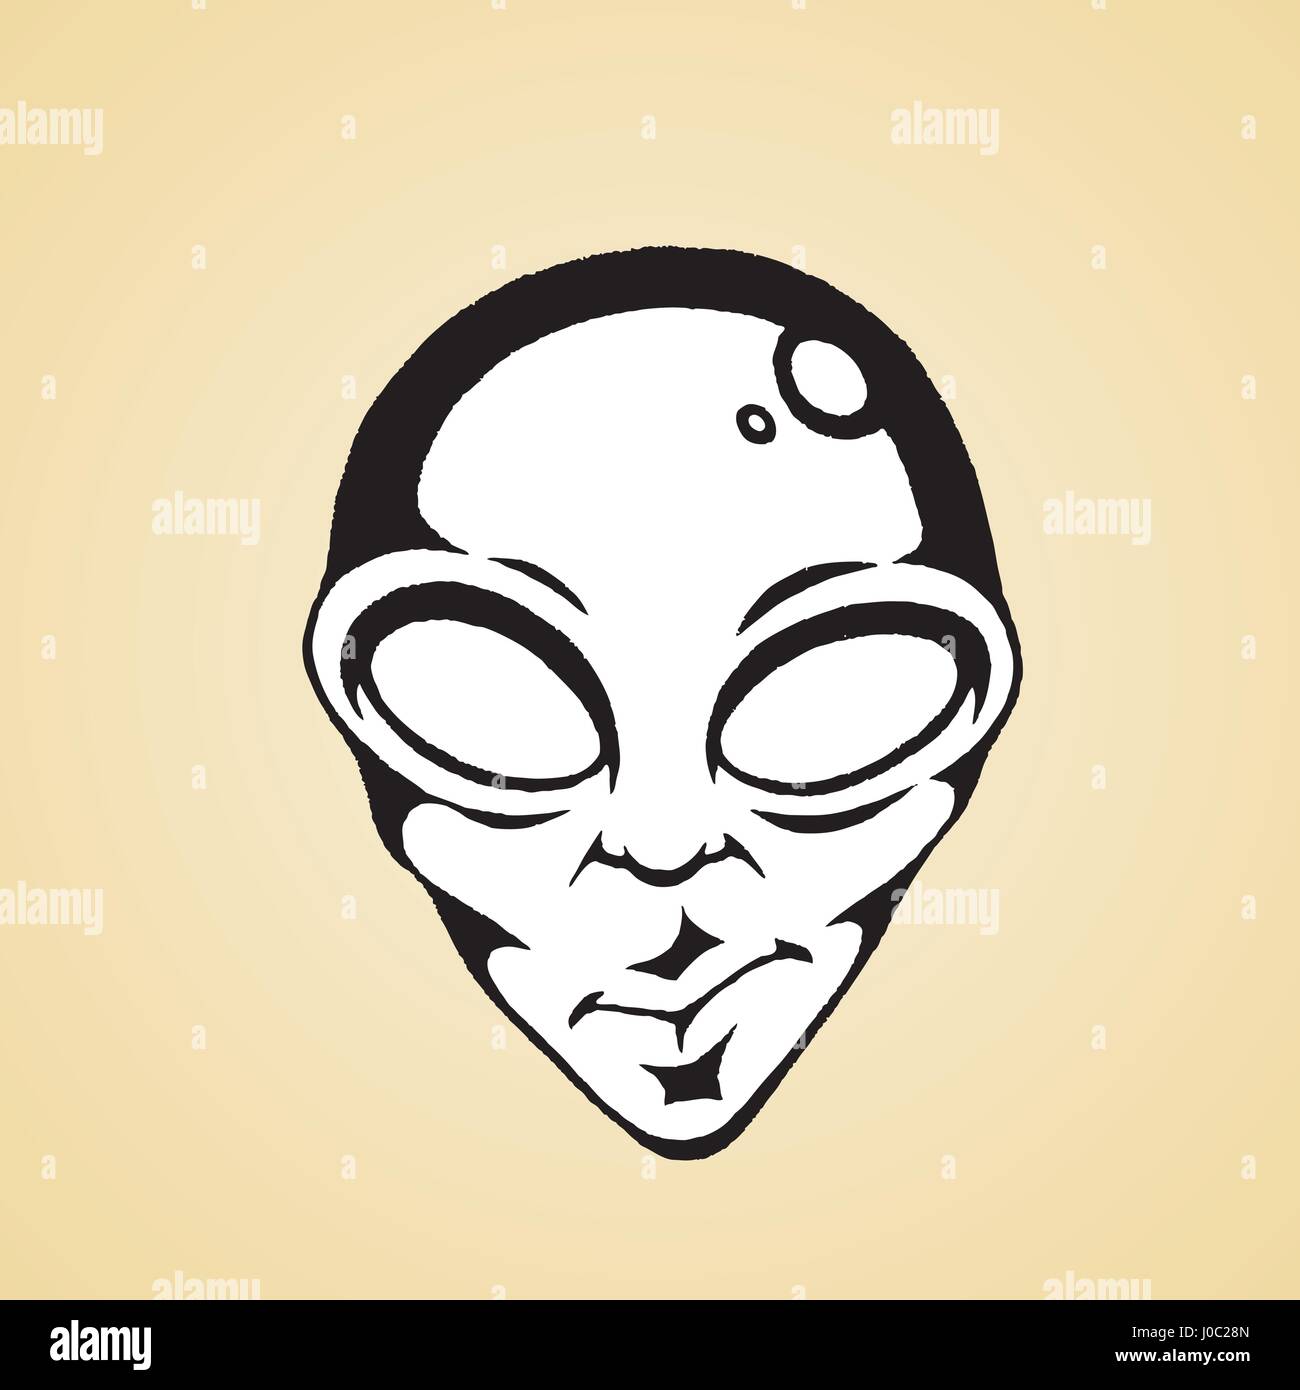 Illustrazione vettoriale di un stile Scratchboard disegno a inchiostro di un alieno faccia con riempimento bianco Illustrazione Vettoriale